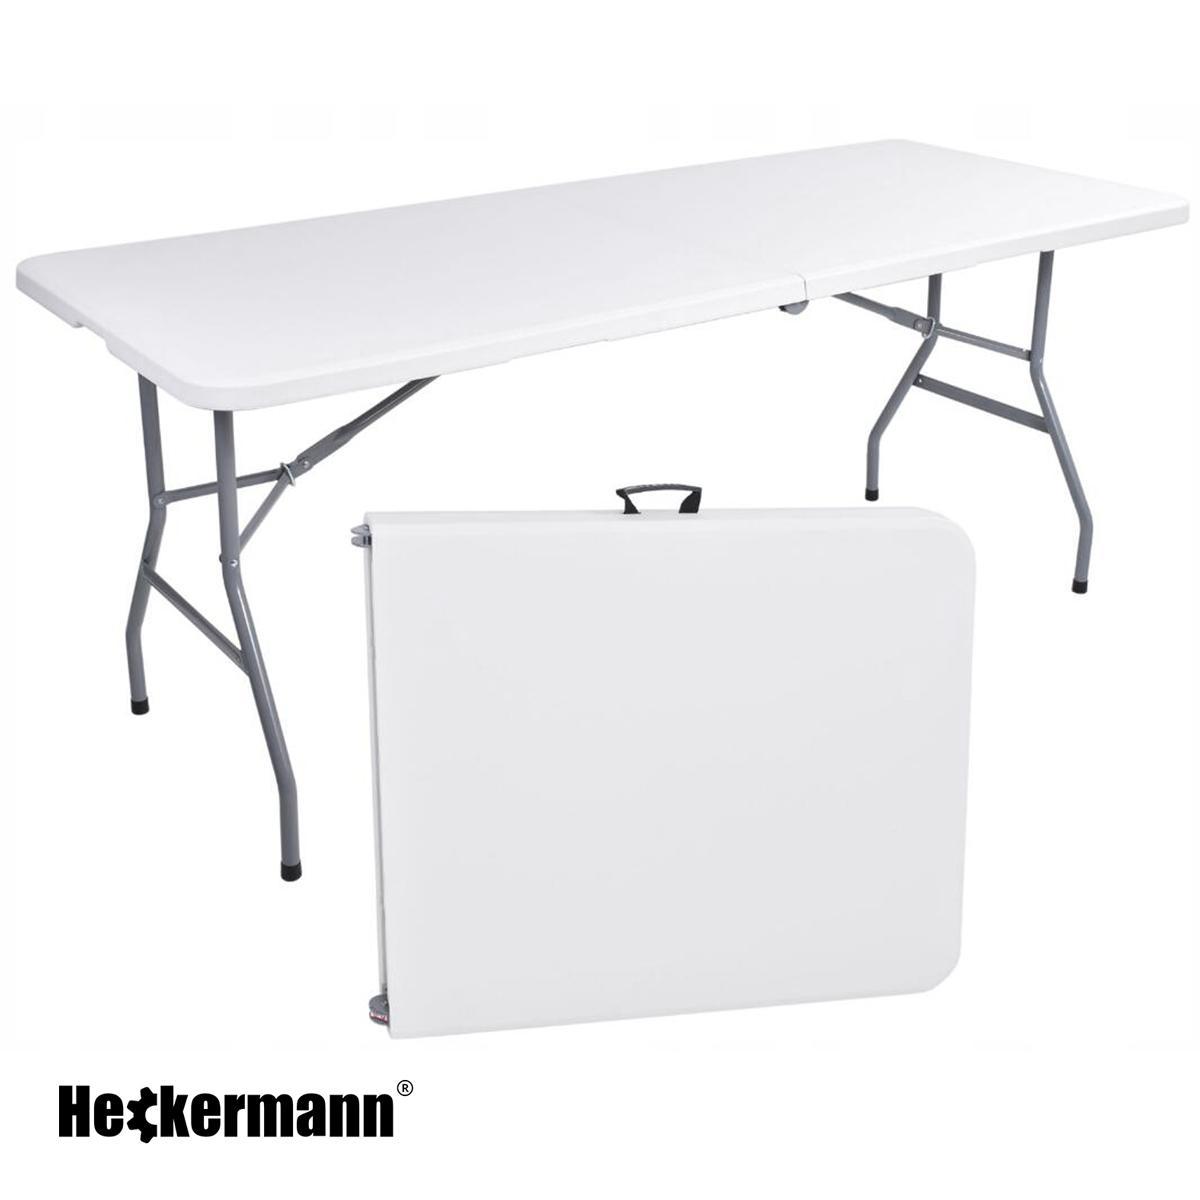 Stół składany cateringowy 180x74cm Heckermann XJM-Z180 Biały nr. 3